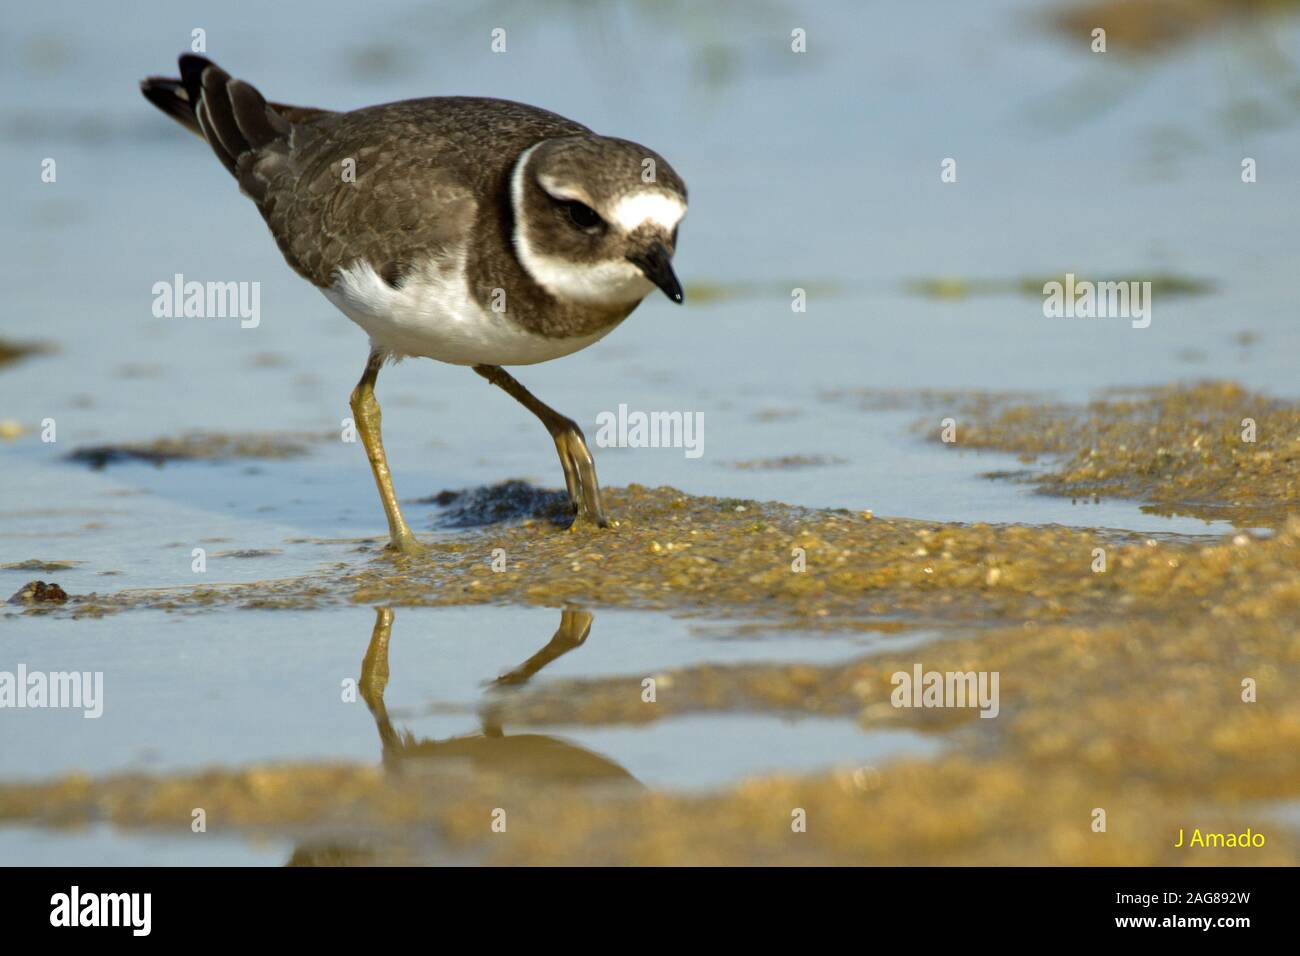 Closeup shot of a beautiful dunlin bird drinking water in the lake Stock Photo